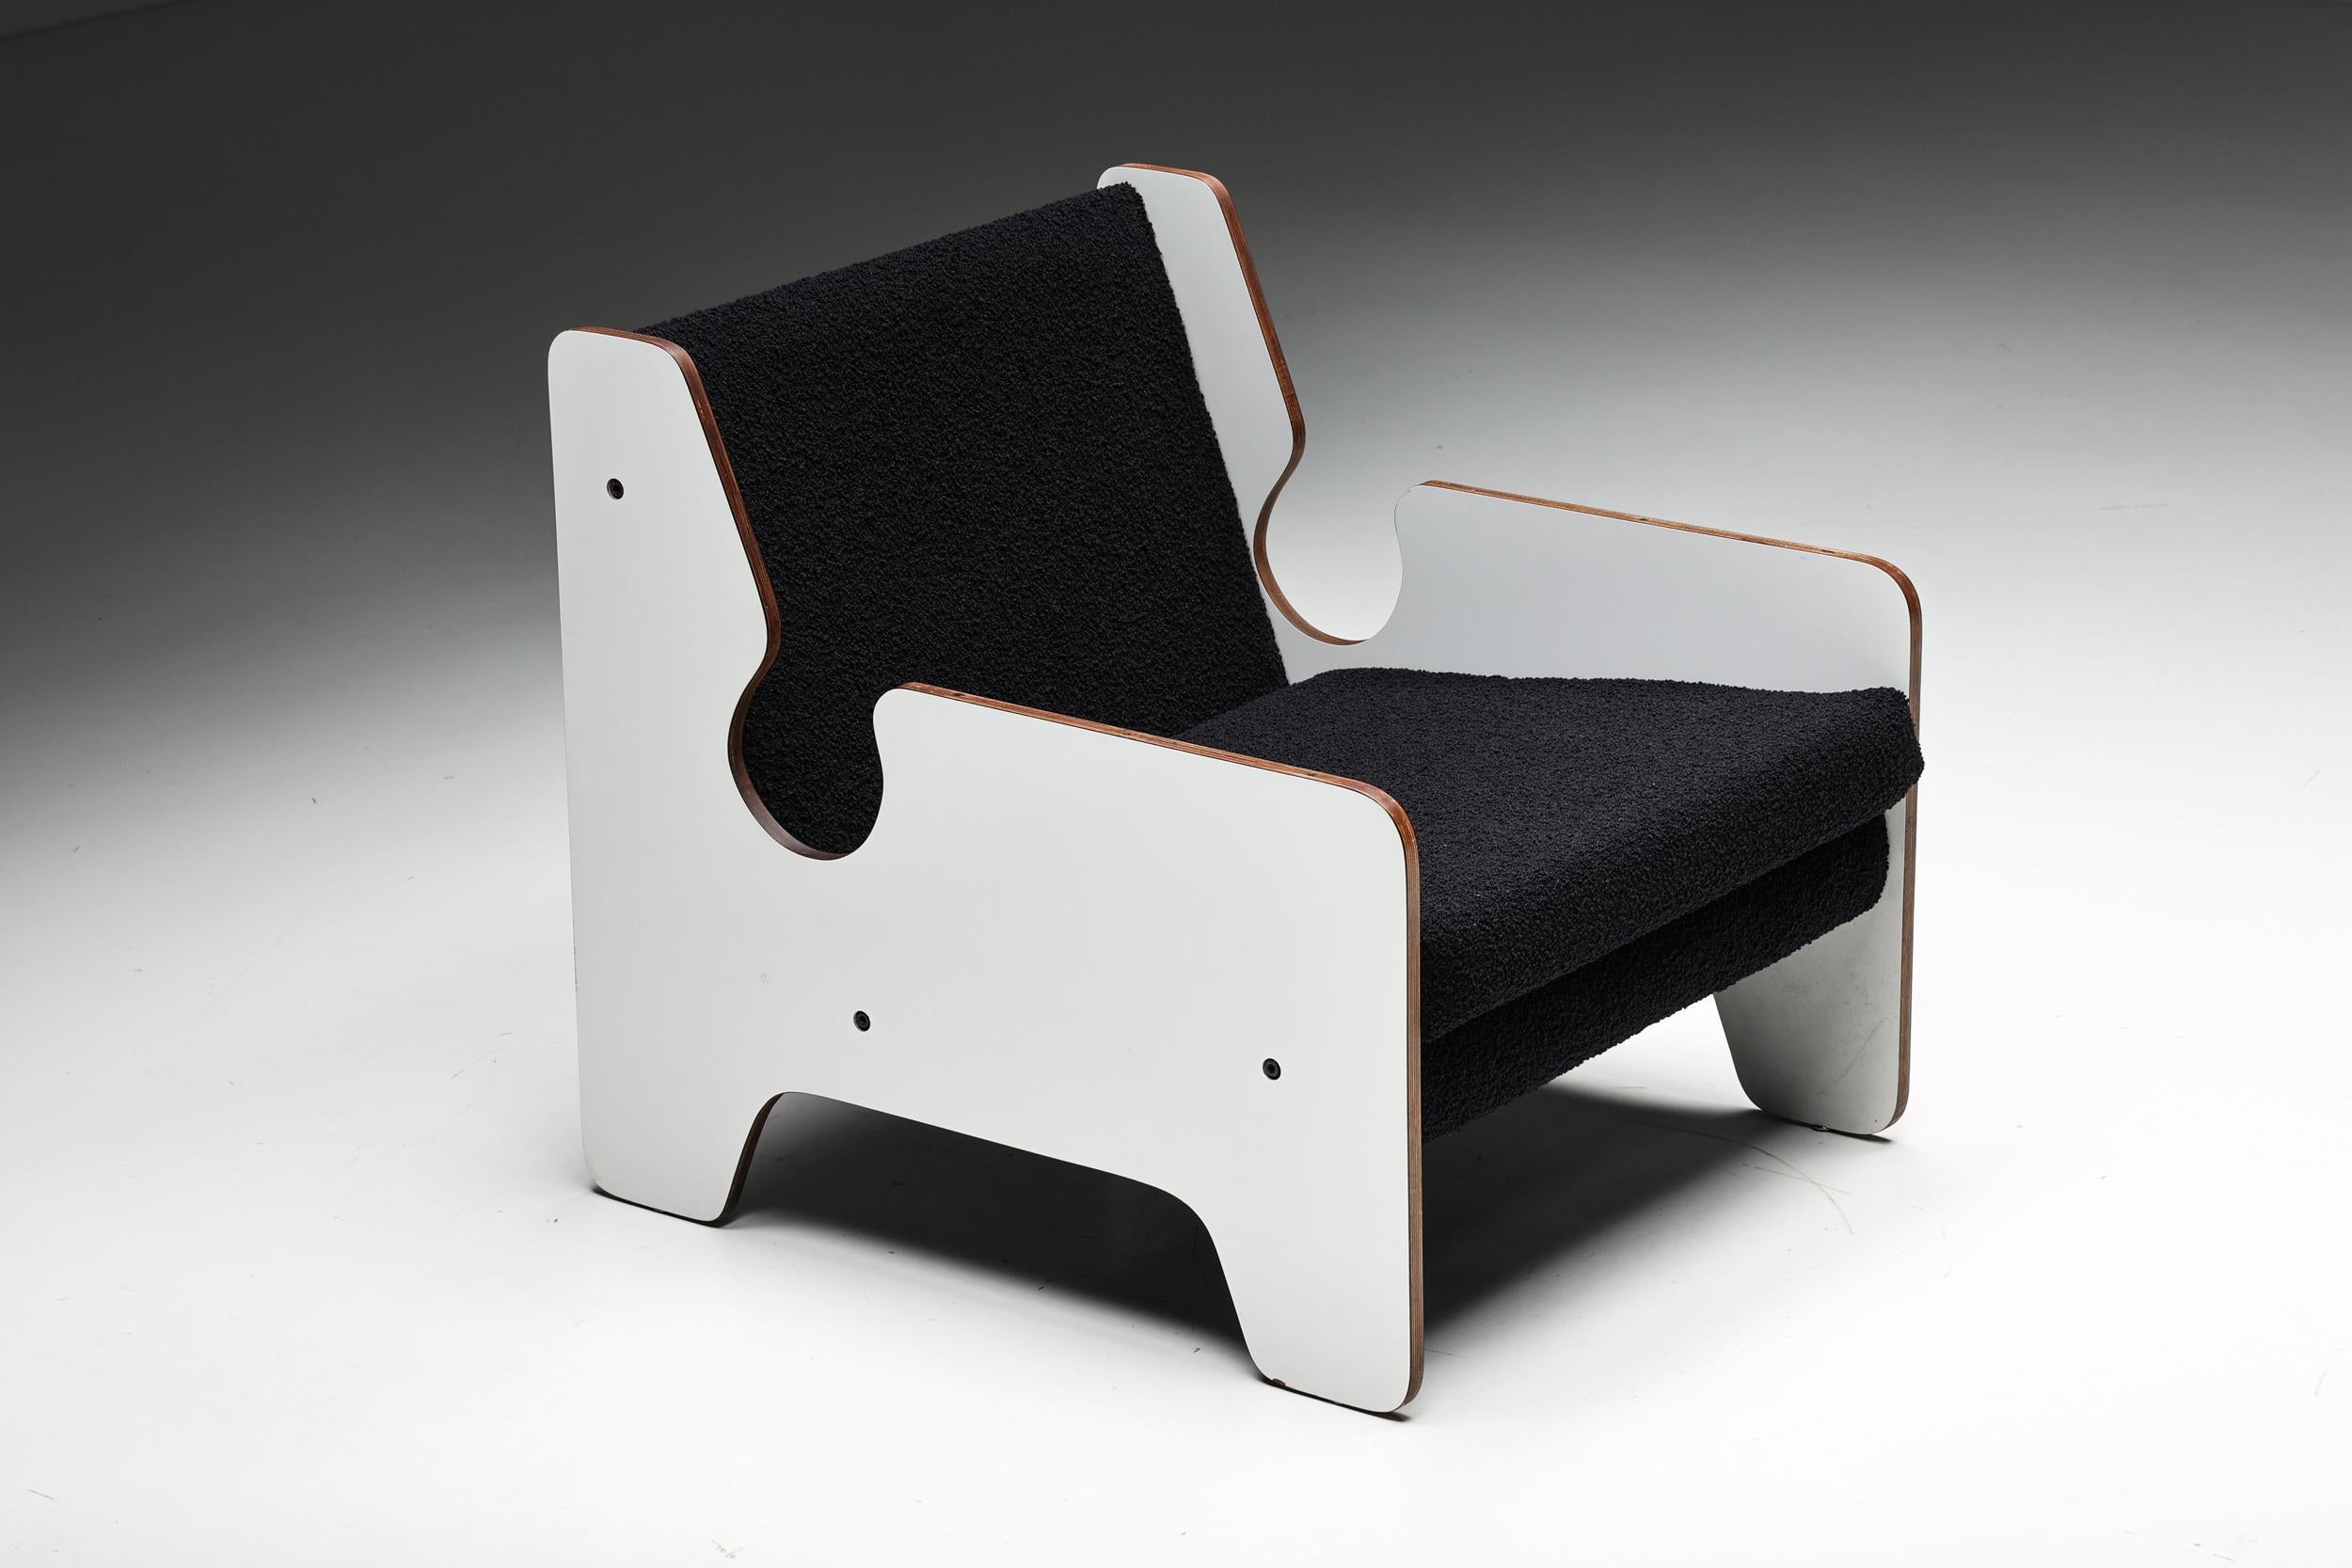 Chaise longue italienne postmoderne noire et blanche, un magnifique meuble qui allie de manière transparente l'élégance intemporelle de l'ère du design des années 1970 à une touche contemporaine. Rembourrée en tissu bouclé, cette chaise unique est